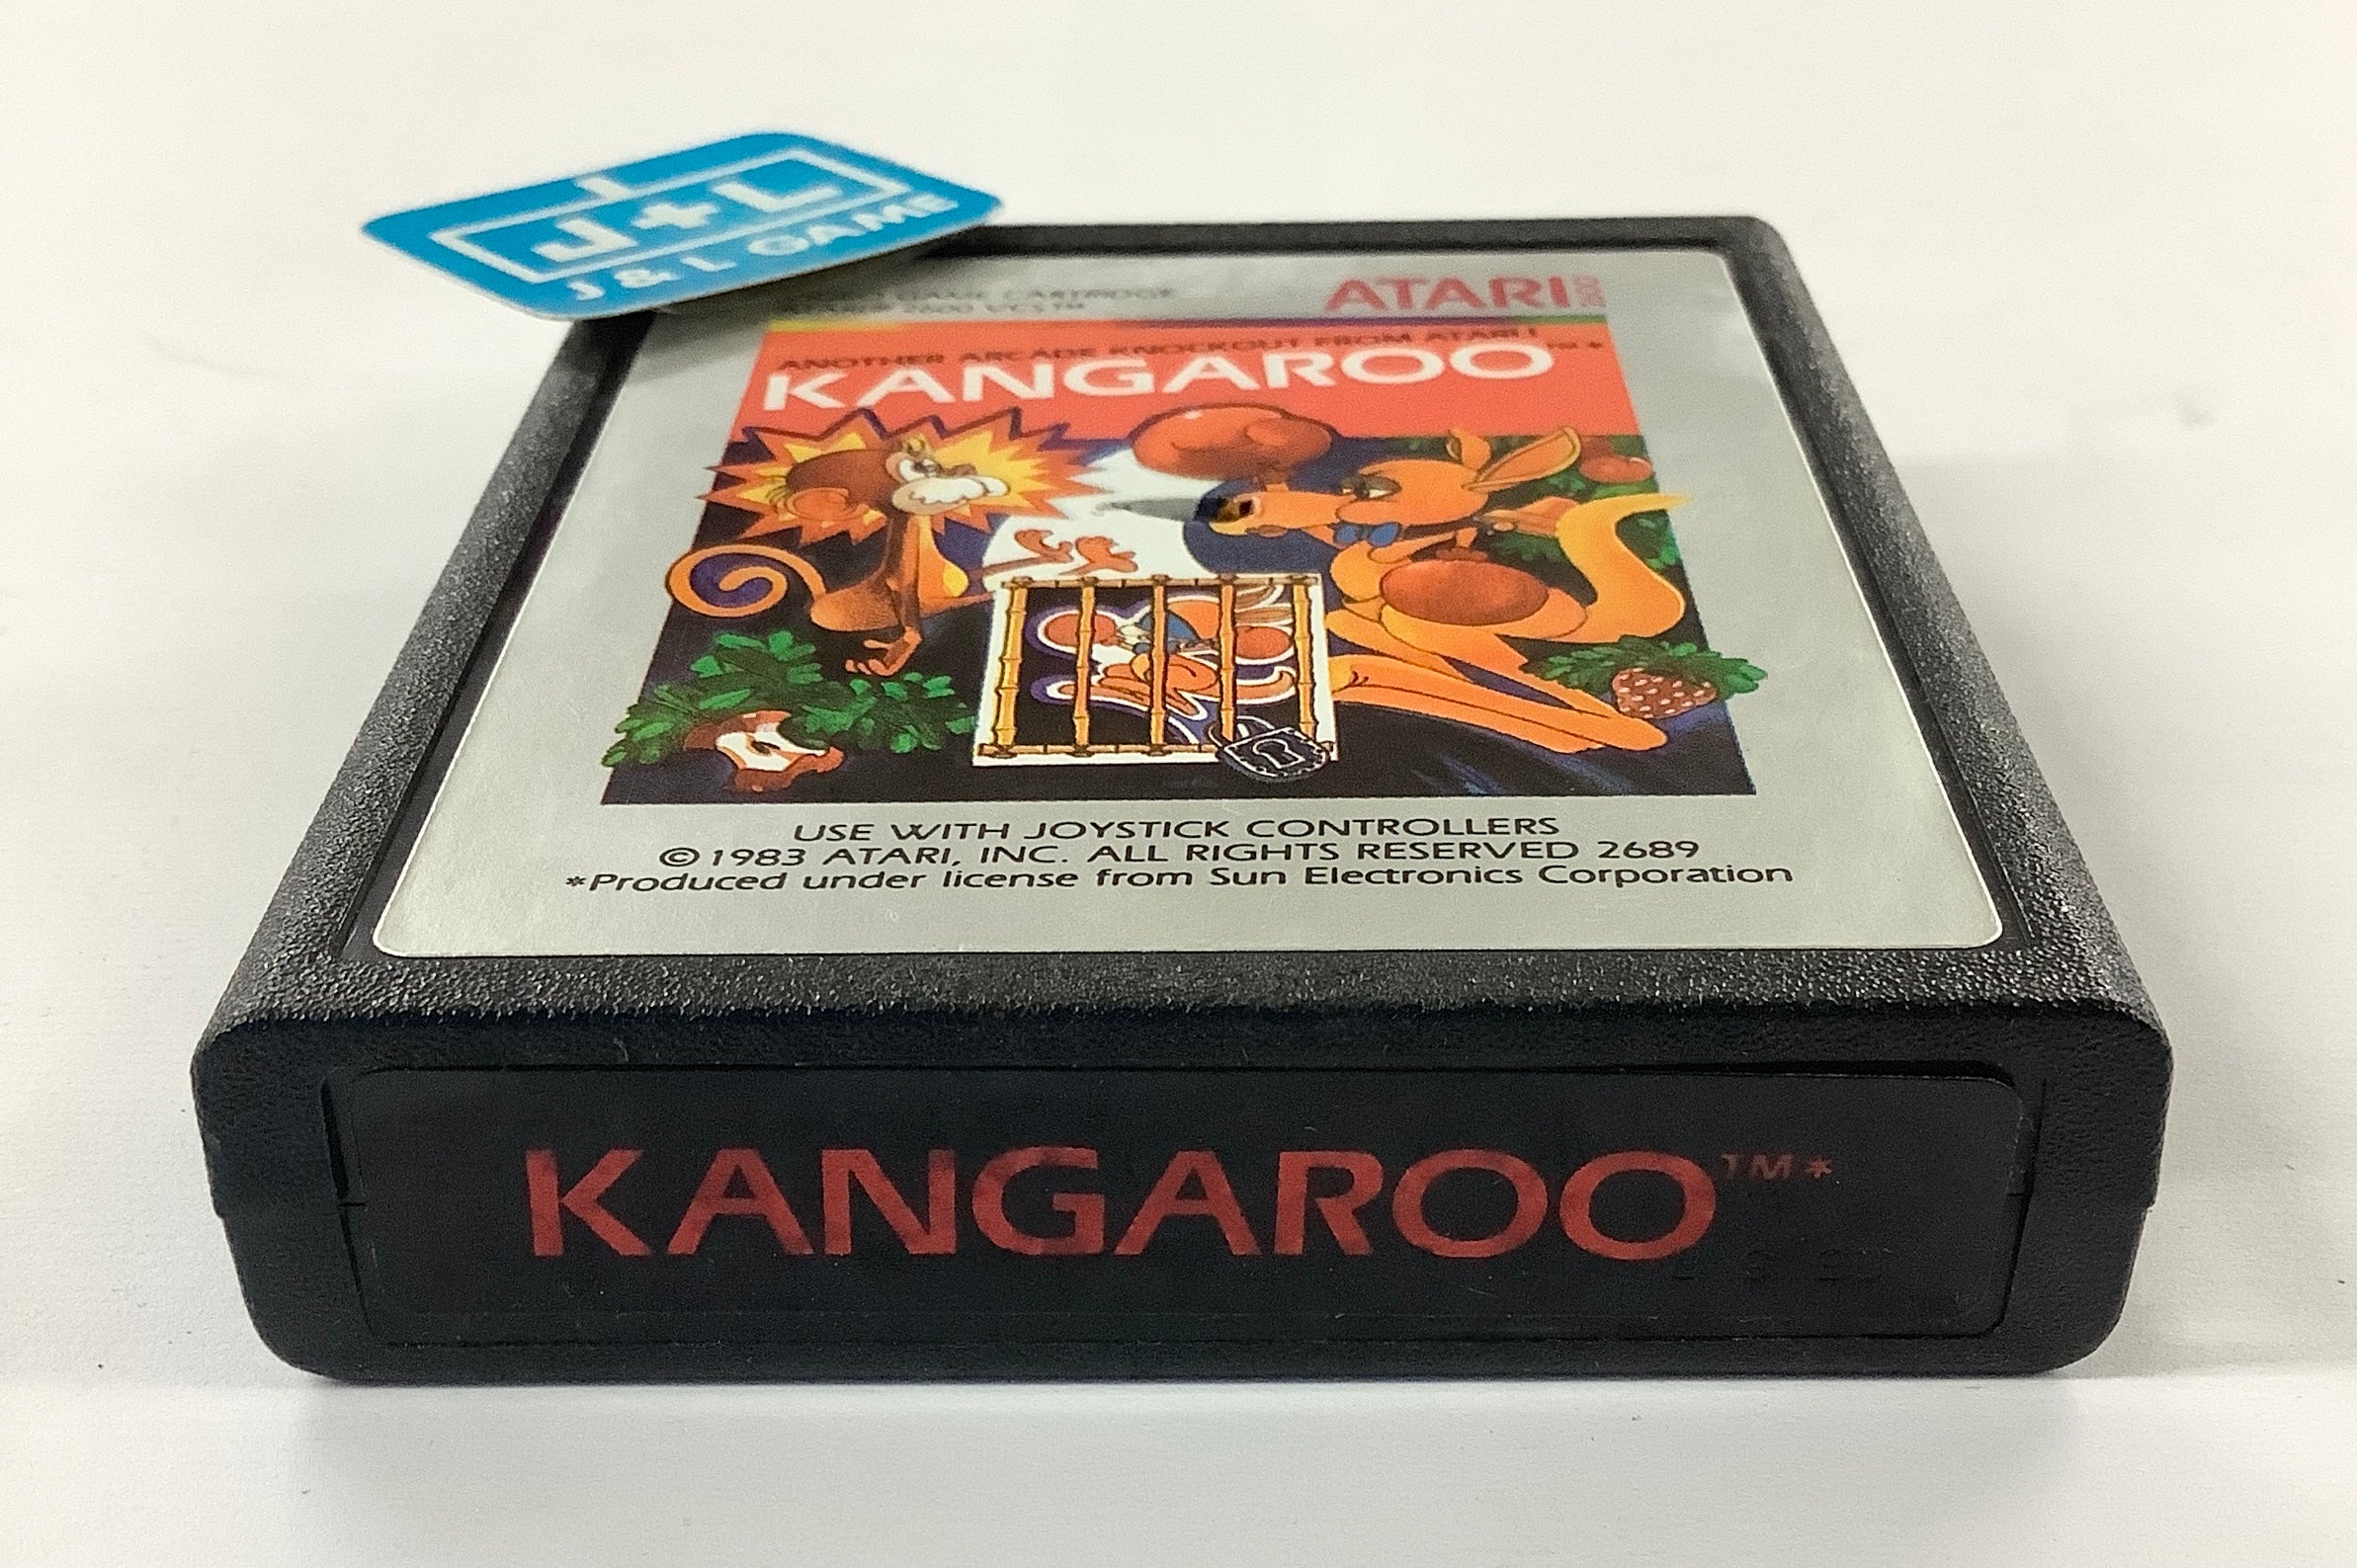 Kangaroo - Atari 2600 [Pre-Owned] Video Games Atari Inc.   